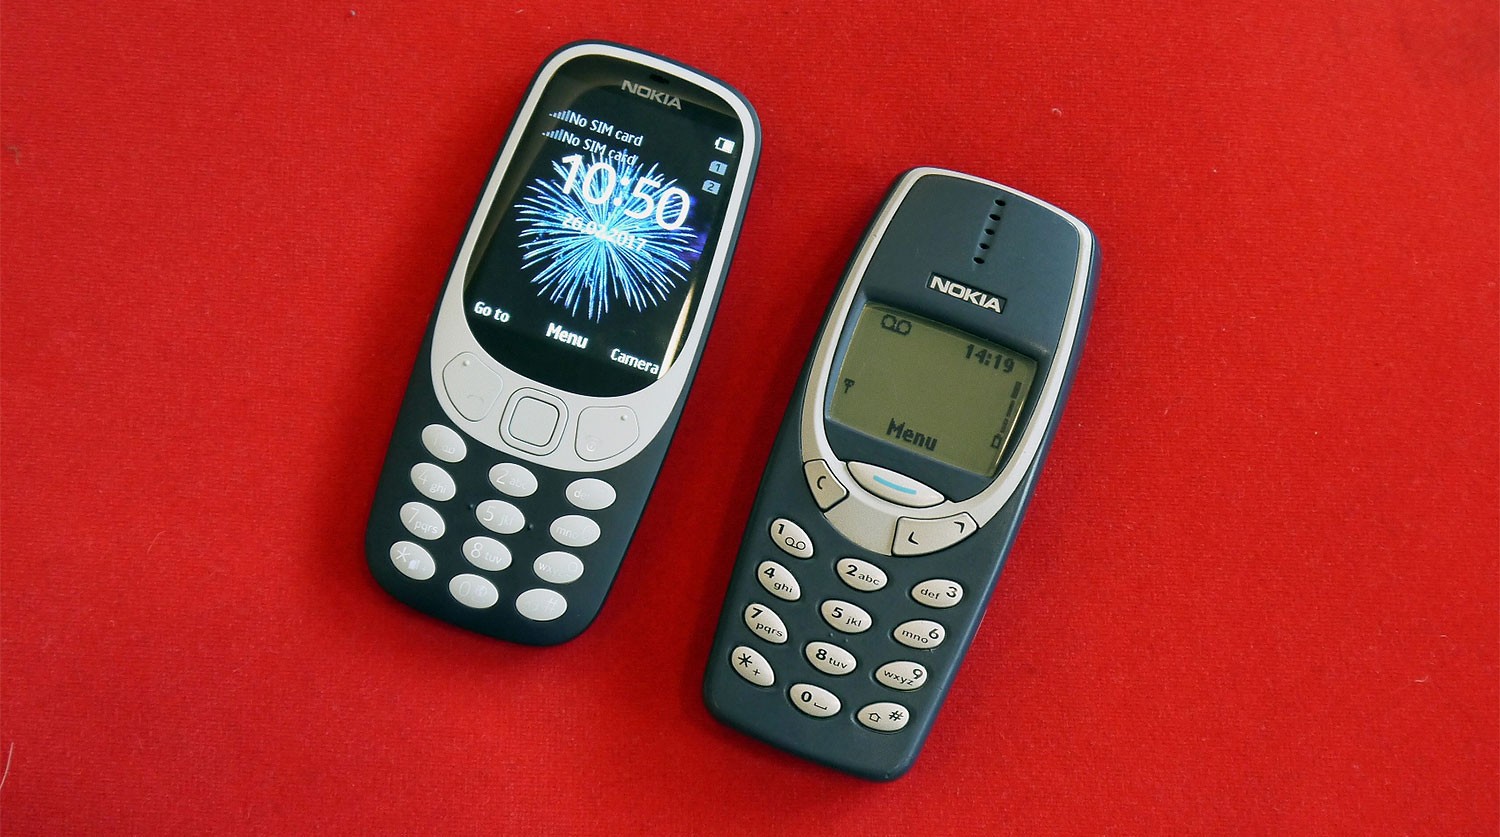 Коштувати нова Nokia 3310 буде в середньому 49 євро (що не так уже й мало як на теперішній час)